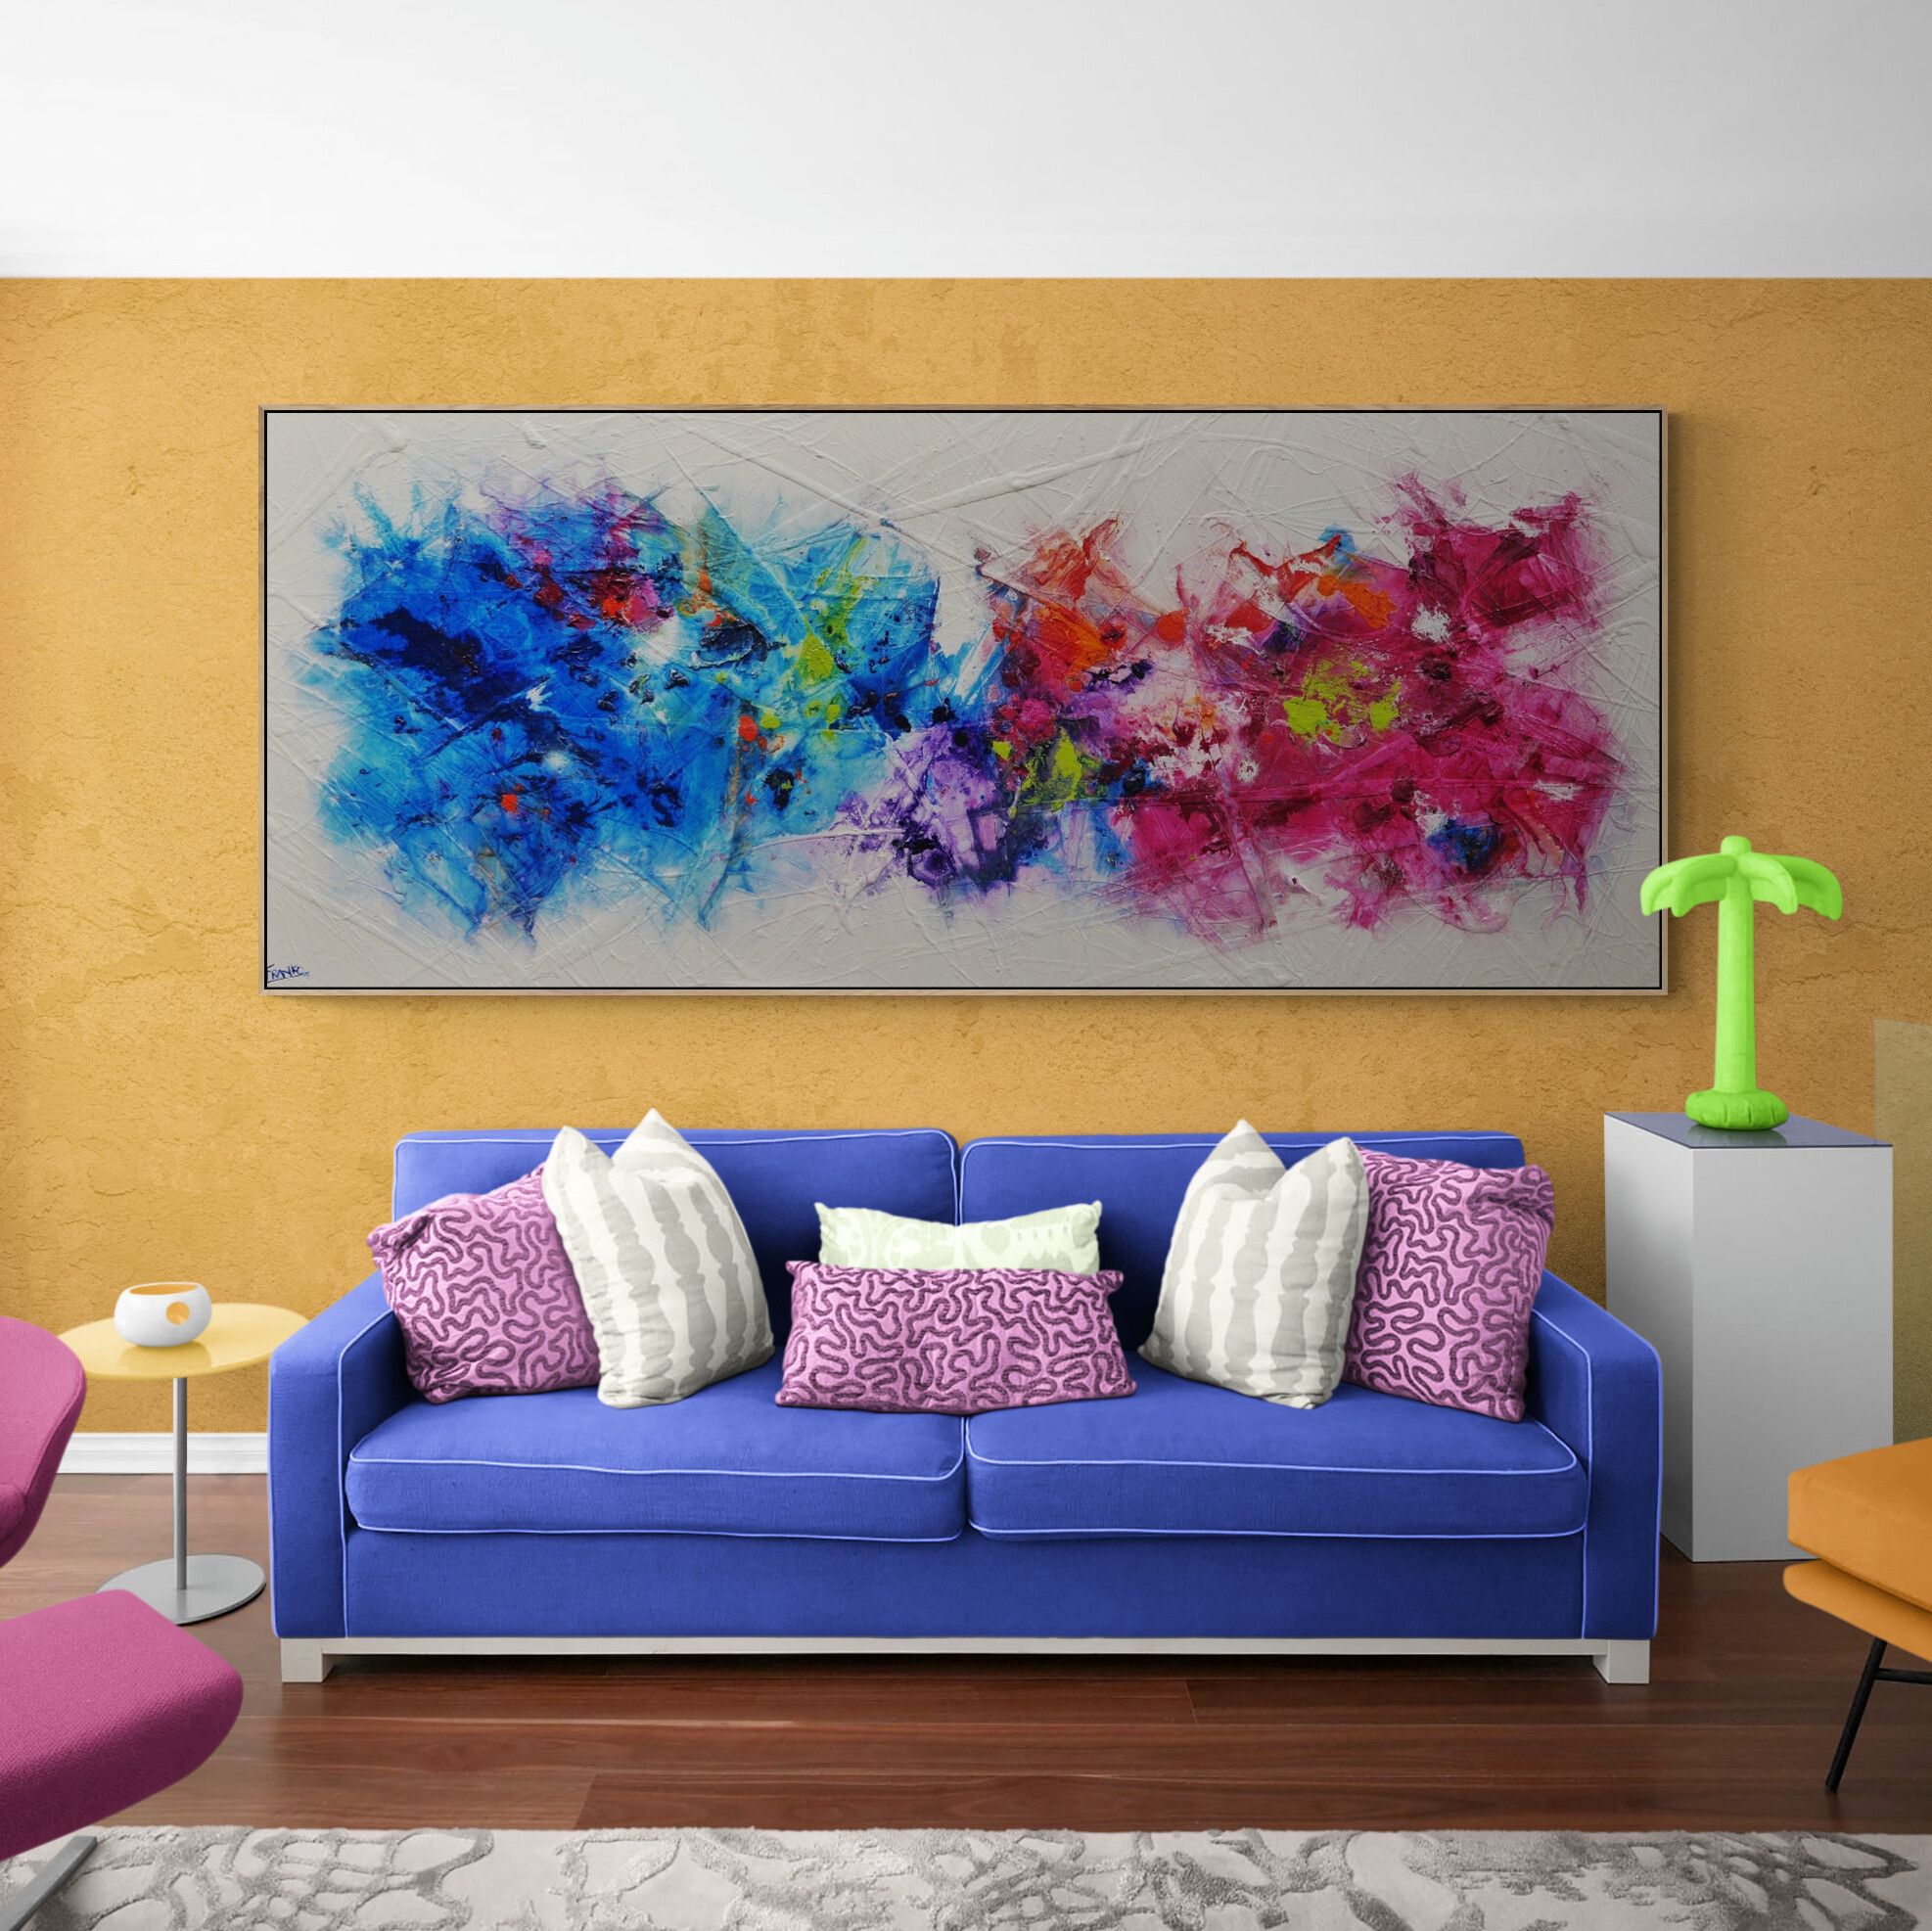 Living Room With Designer Furniture